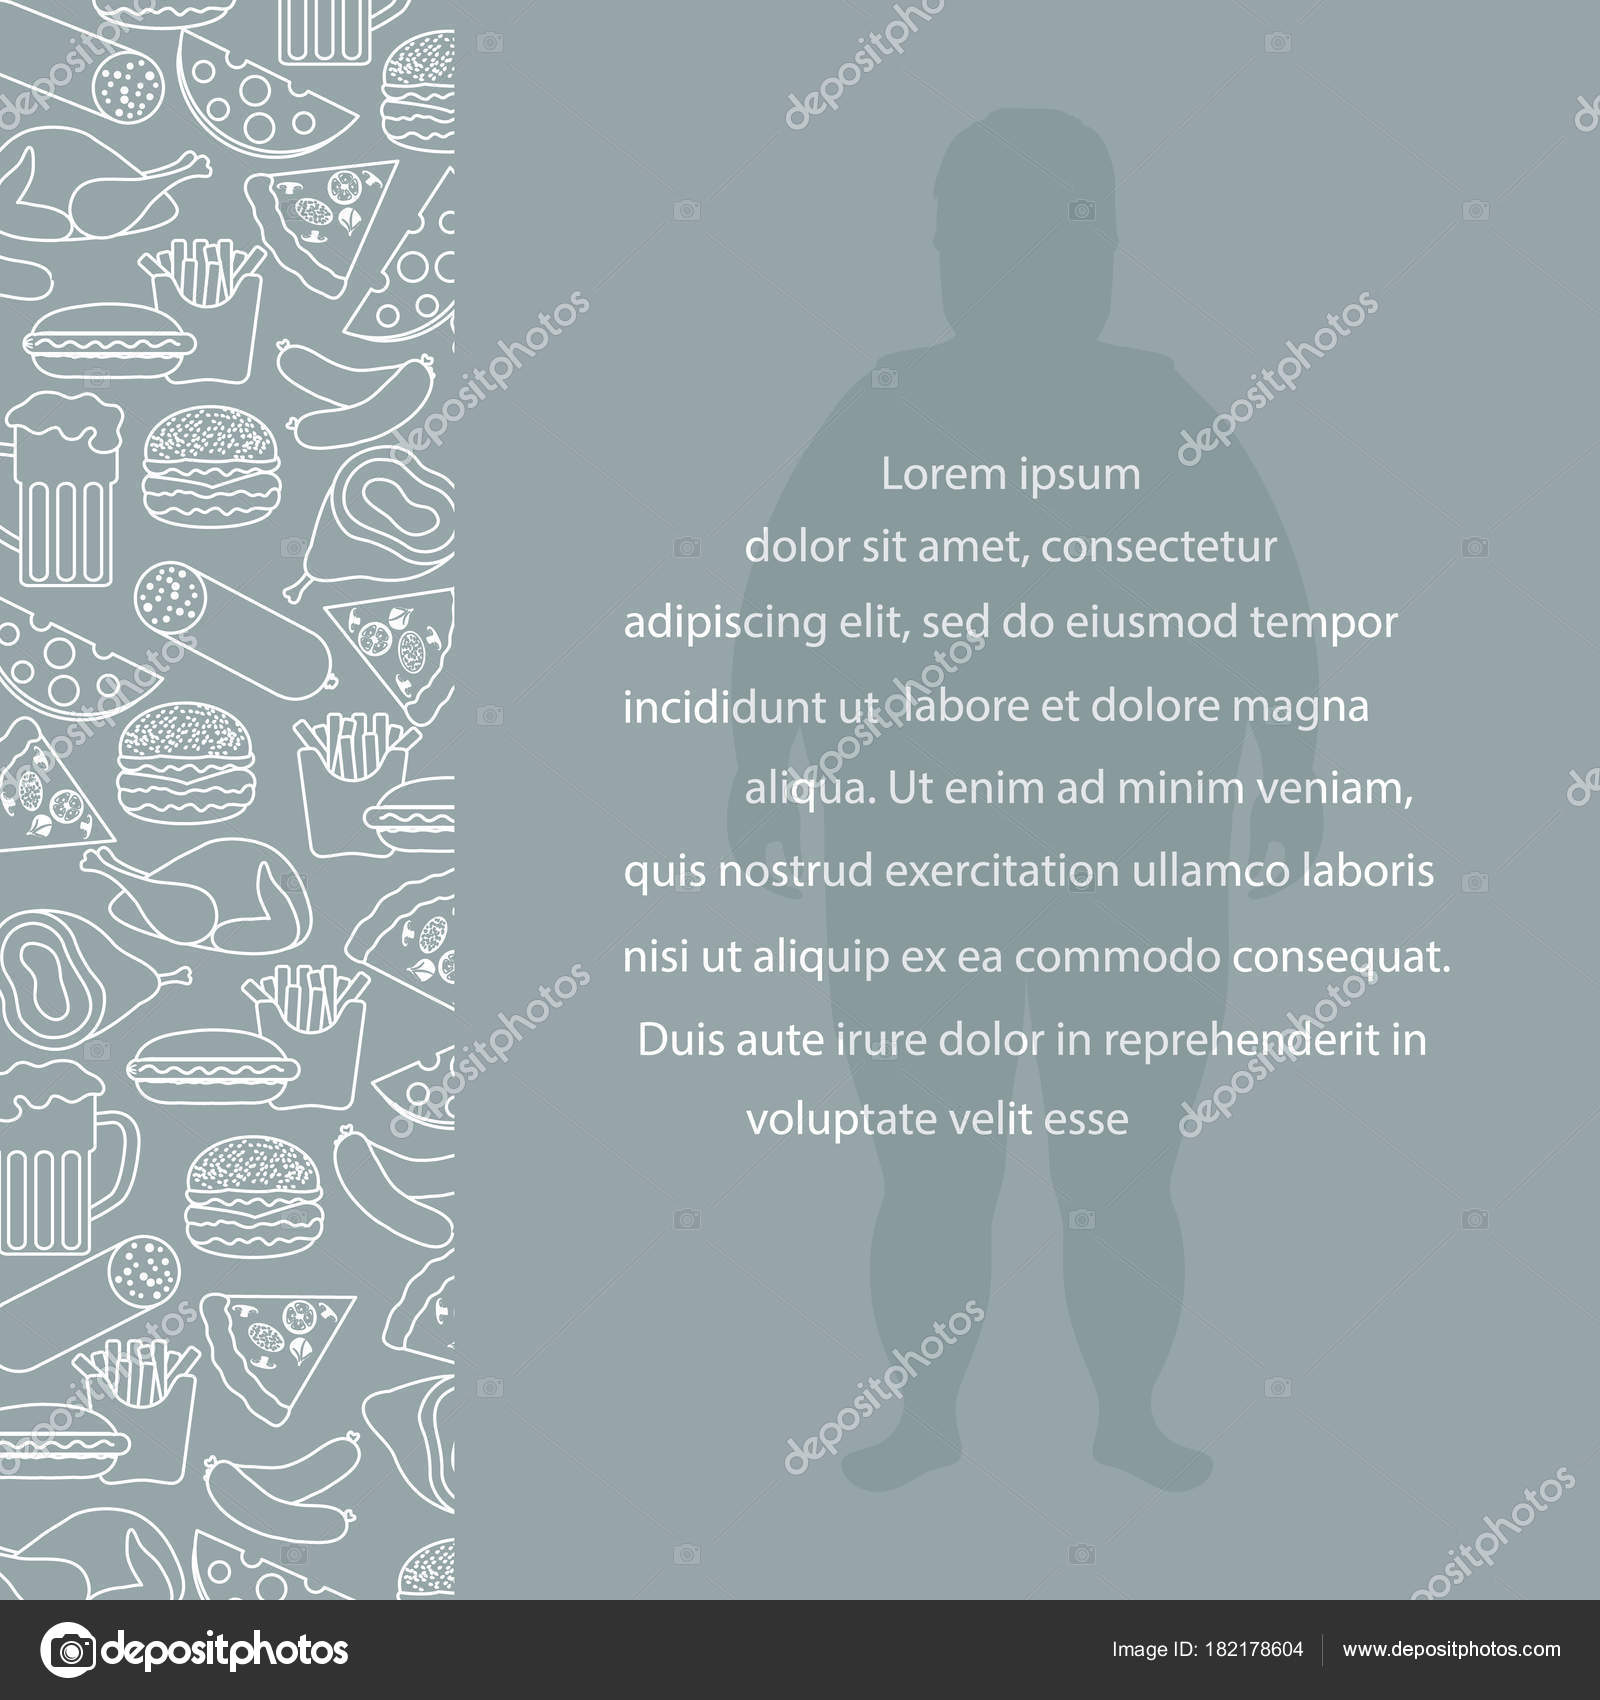 不健康なライフ スタイルのシンボルとデブ男 有害な食生活 バナーのデザインし ストックベクター C Aquamarine Painter Gmail Com